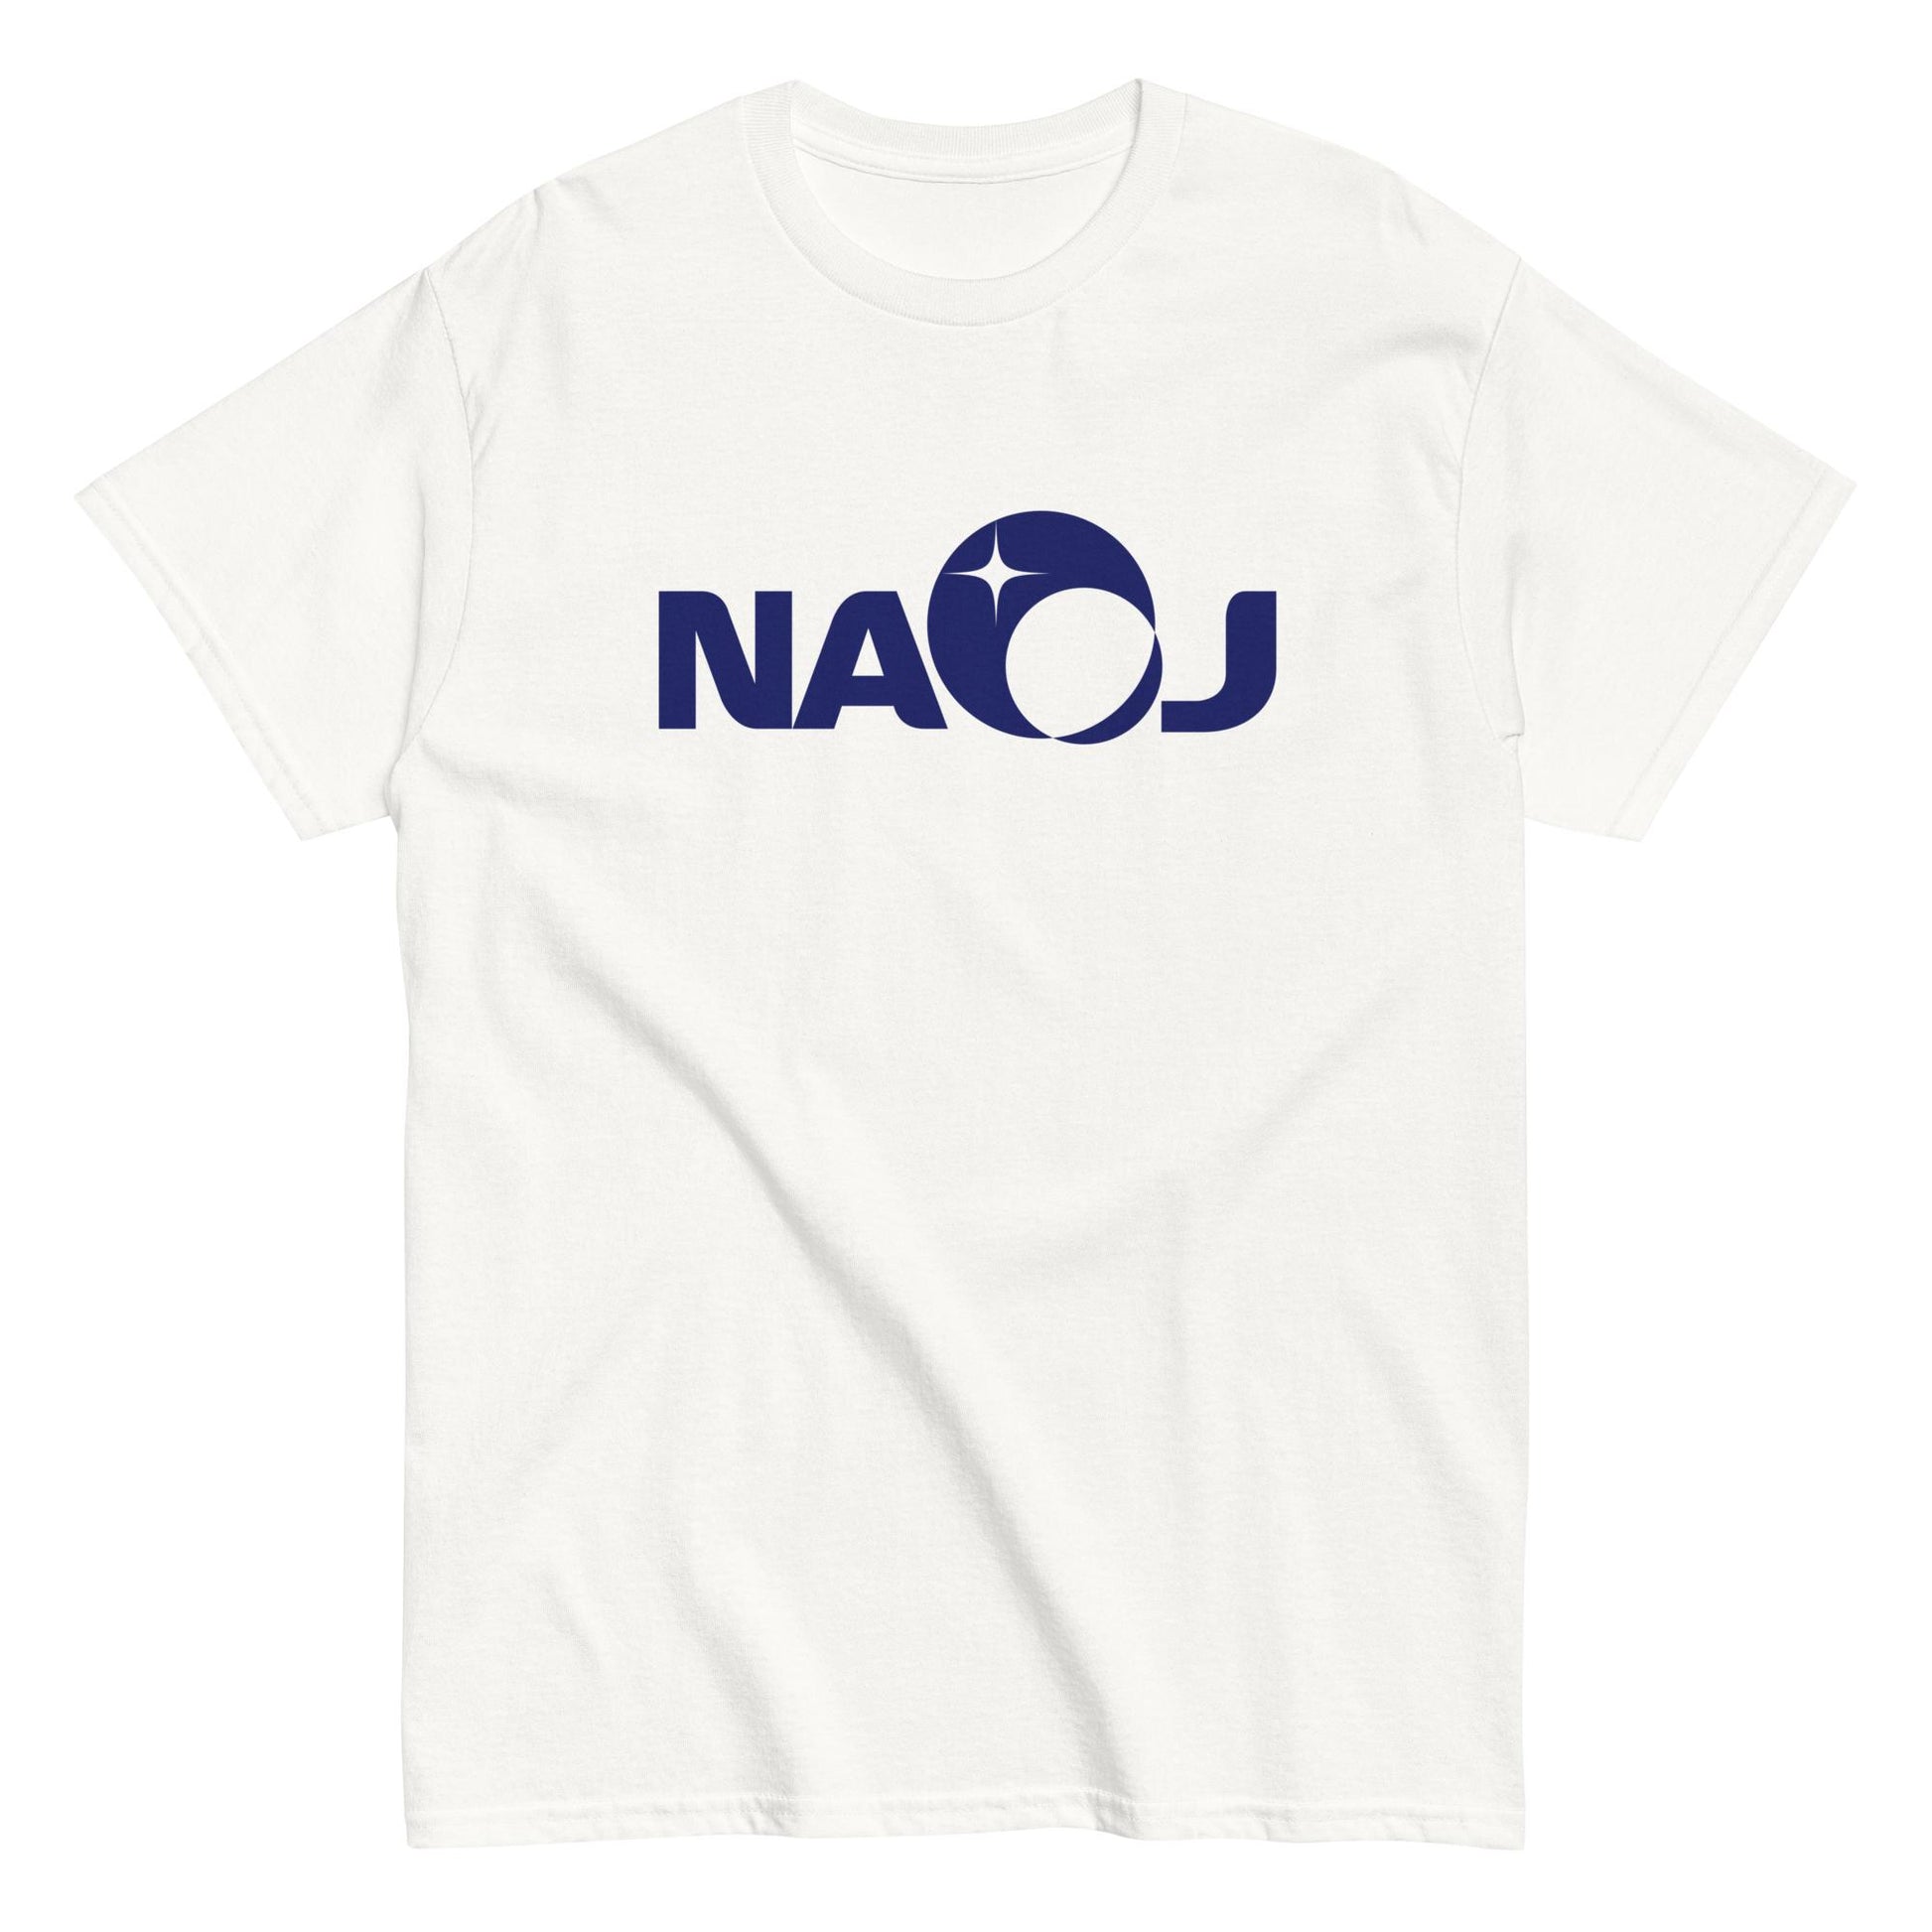 国立天文台 NAOJ ロゴマーク ヘビーウェイト Tシャツ ホワイト S 00